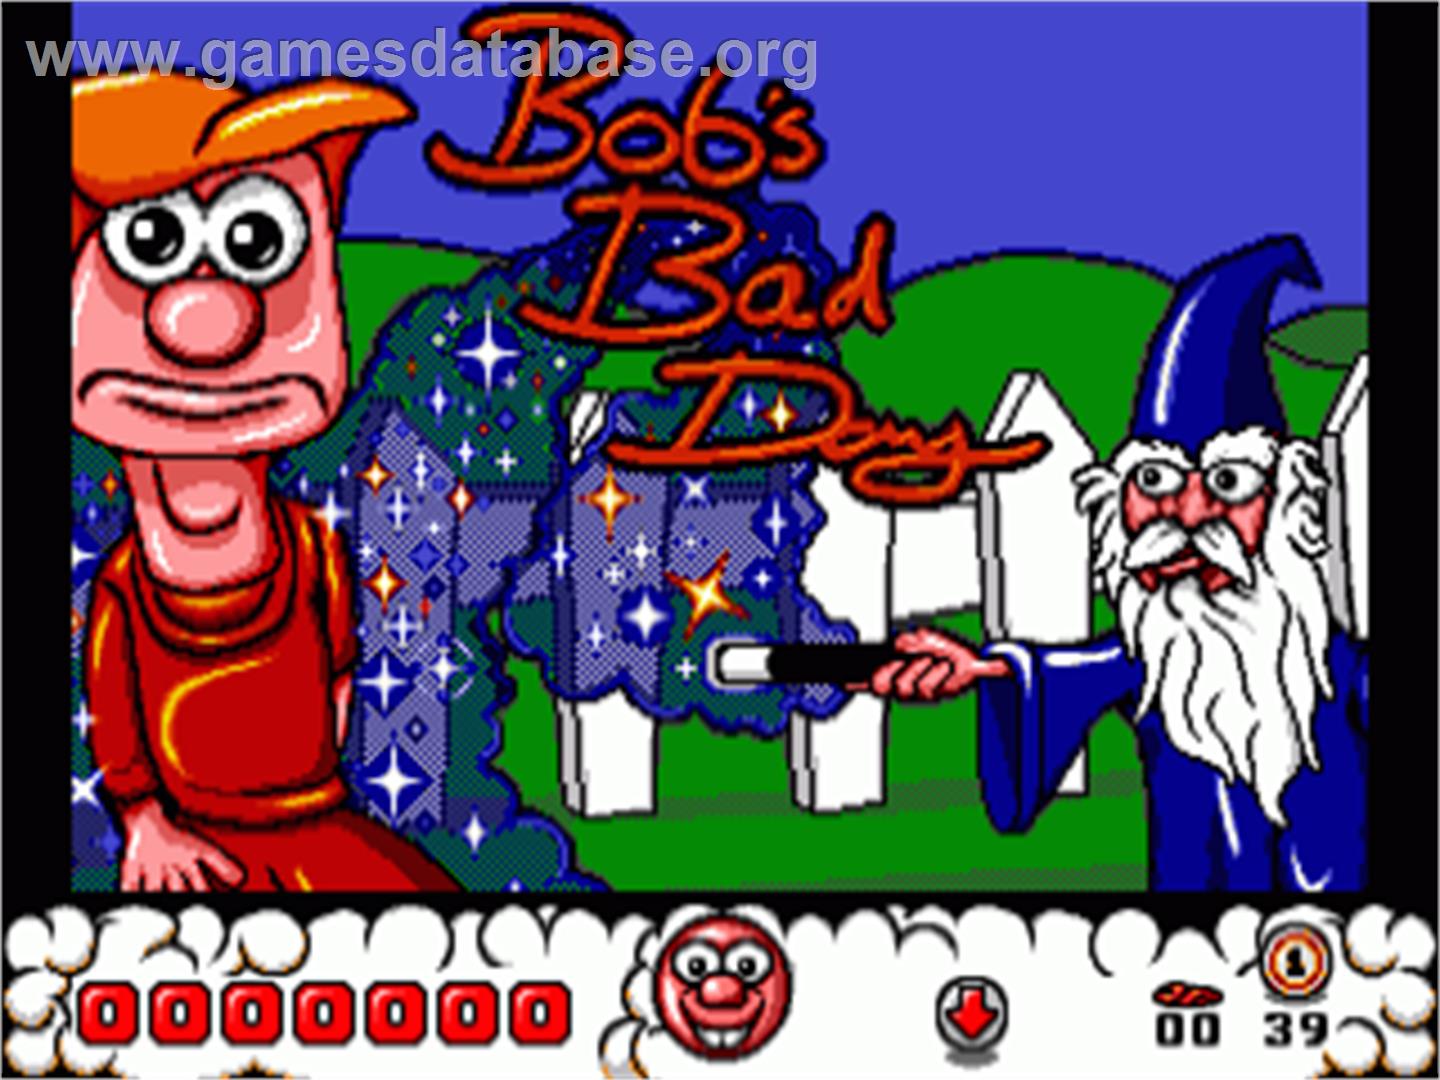 Bob's Bad Day - Commodore Amiga - Artwork - Title Screen